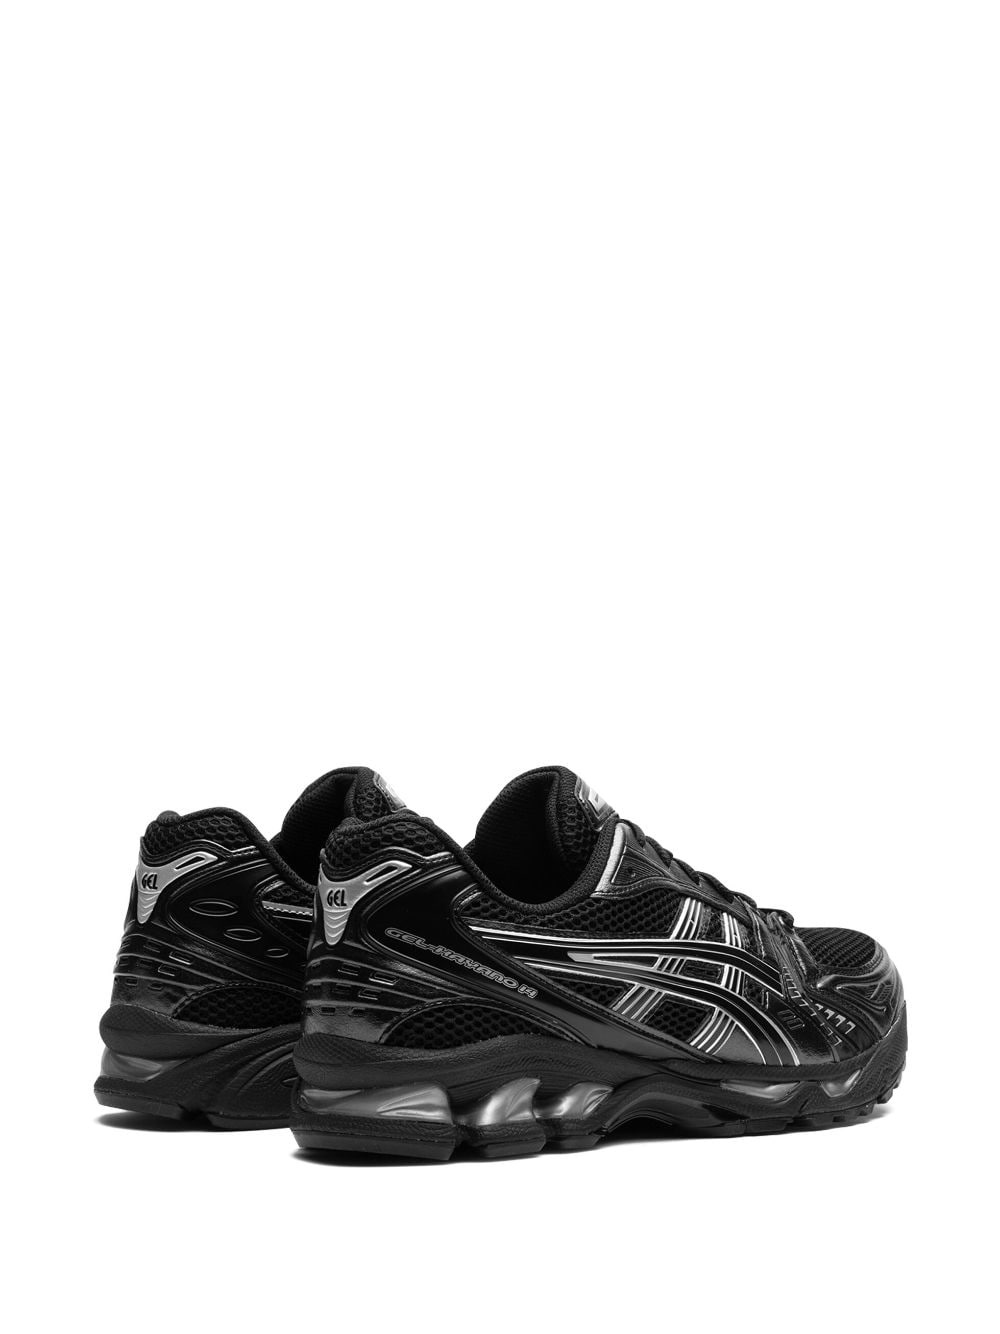 Gel-Kayano 14 "Black Pure Silver" sneakers - 4